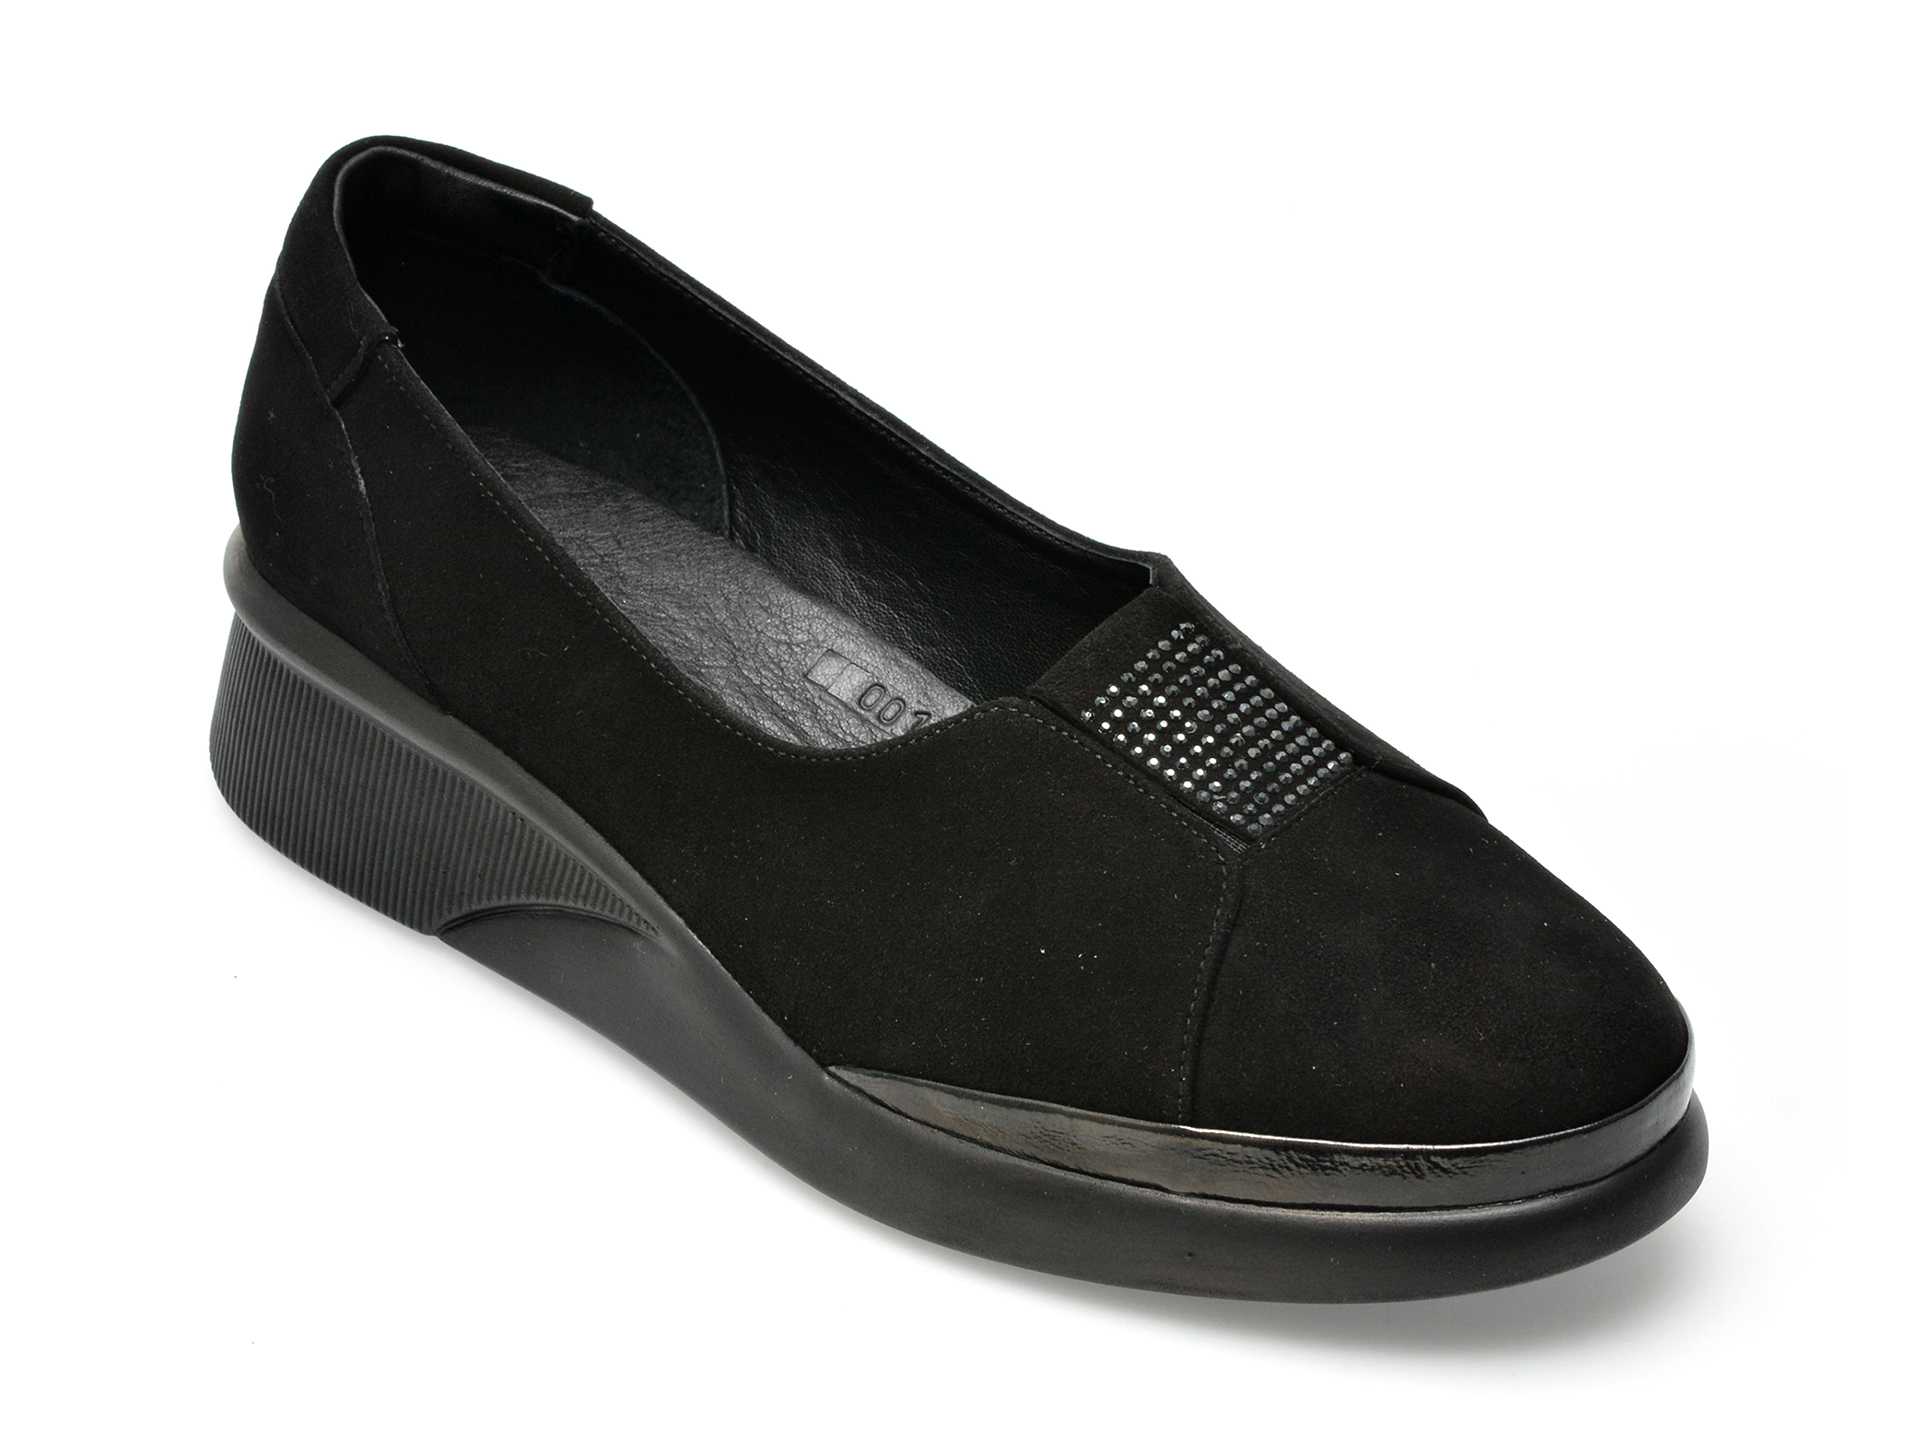 Pantofi GRYXX negri, 12026, din piele intoarsa imagine reduceri black friday 2021 Gryxx